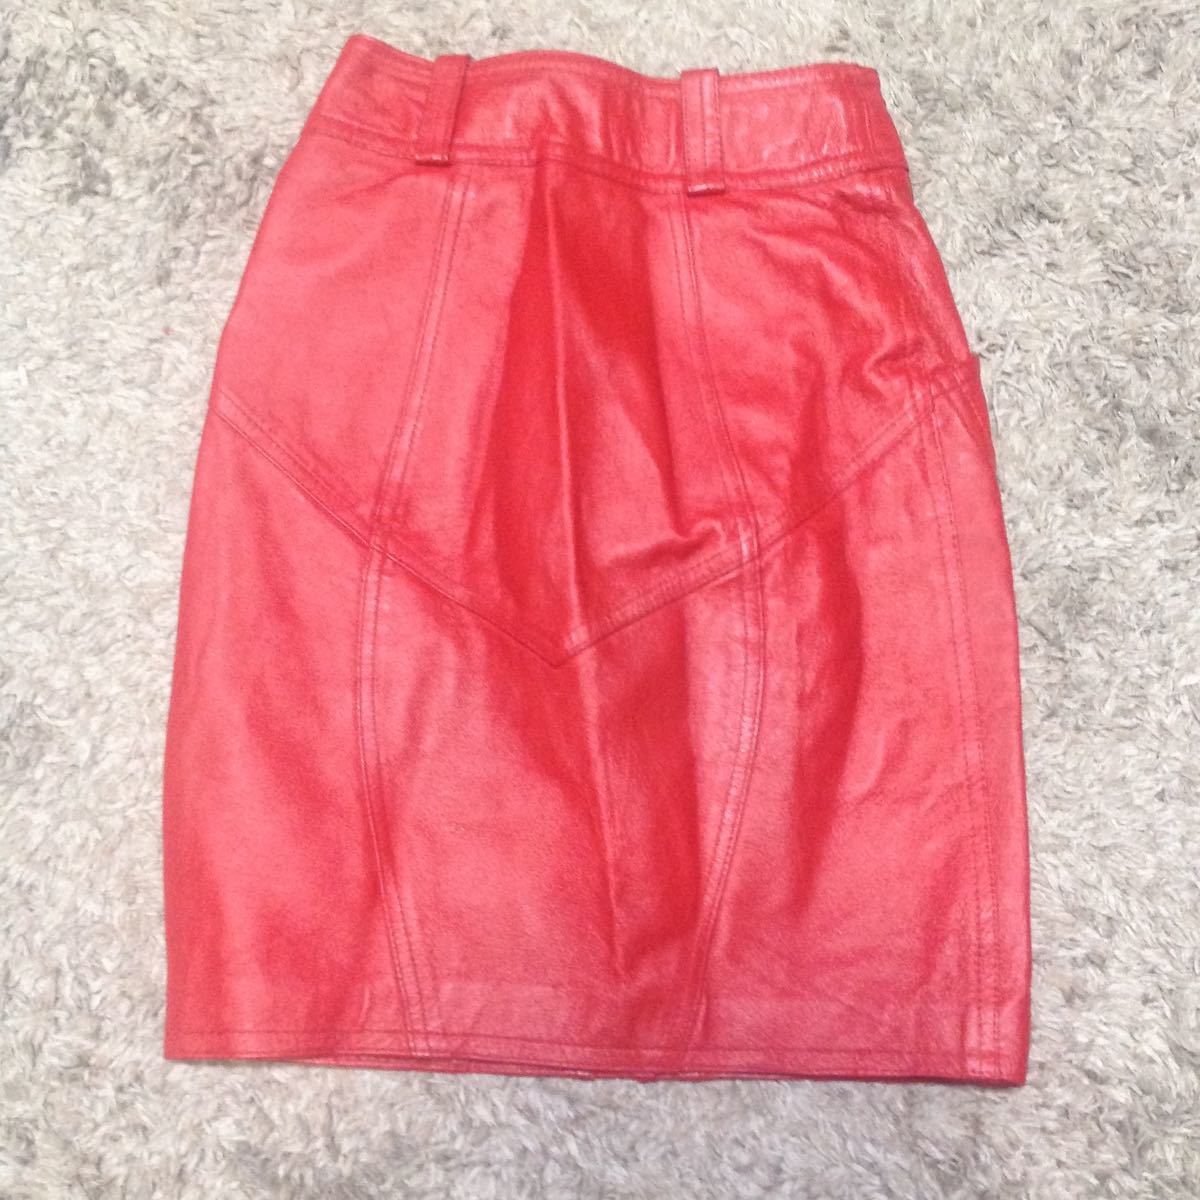  супер стоимость лот меньше размер Lady\'skaunapa кожа узкая юбка 7 размер красный used очень красивый товар 